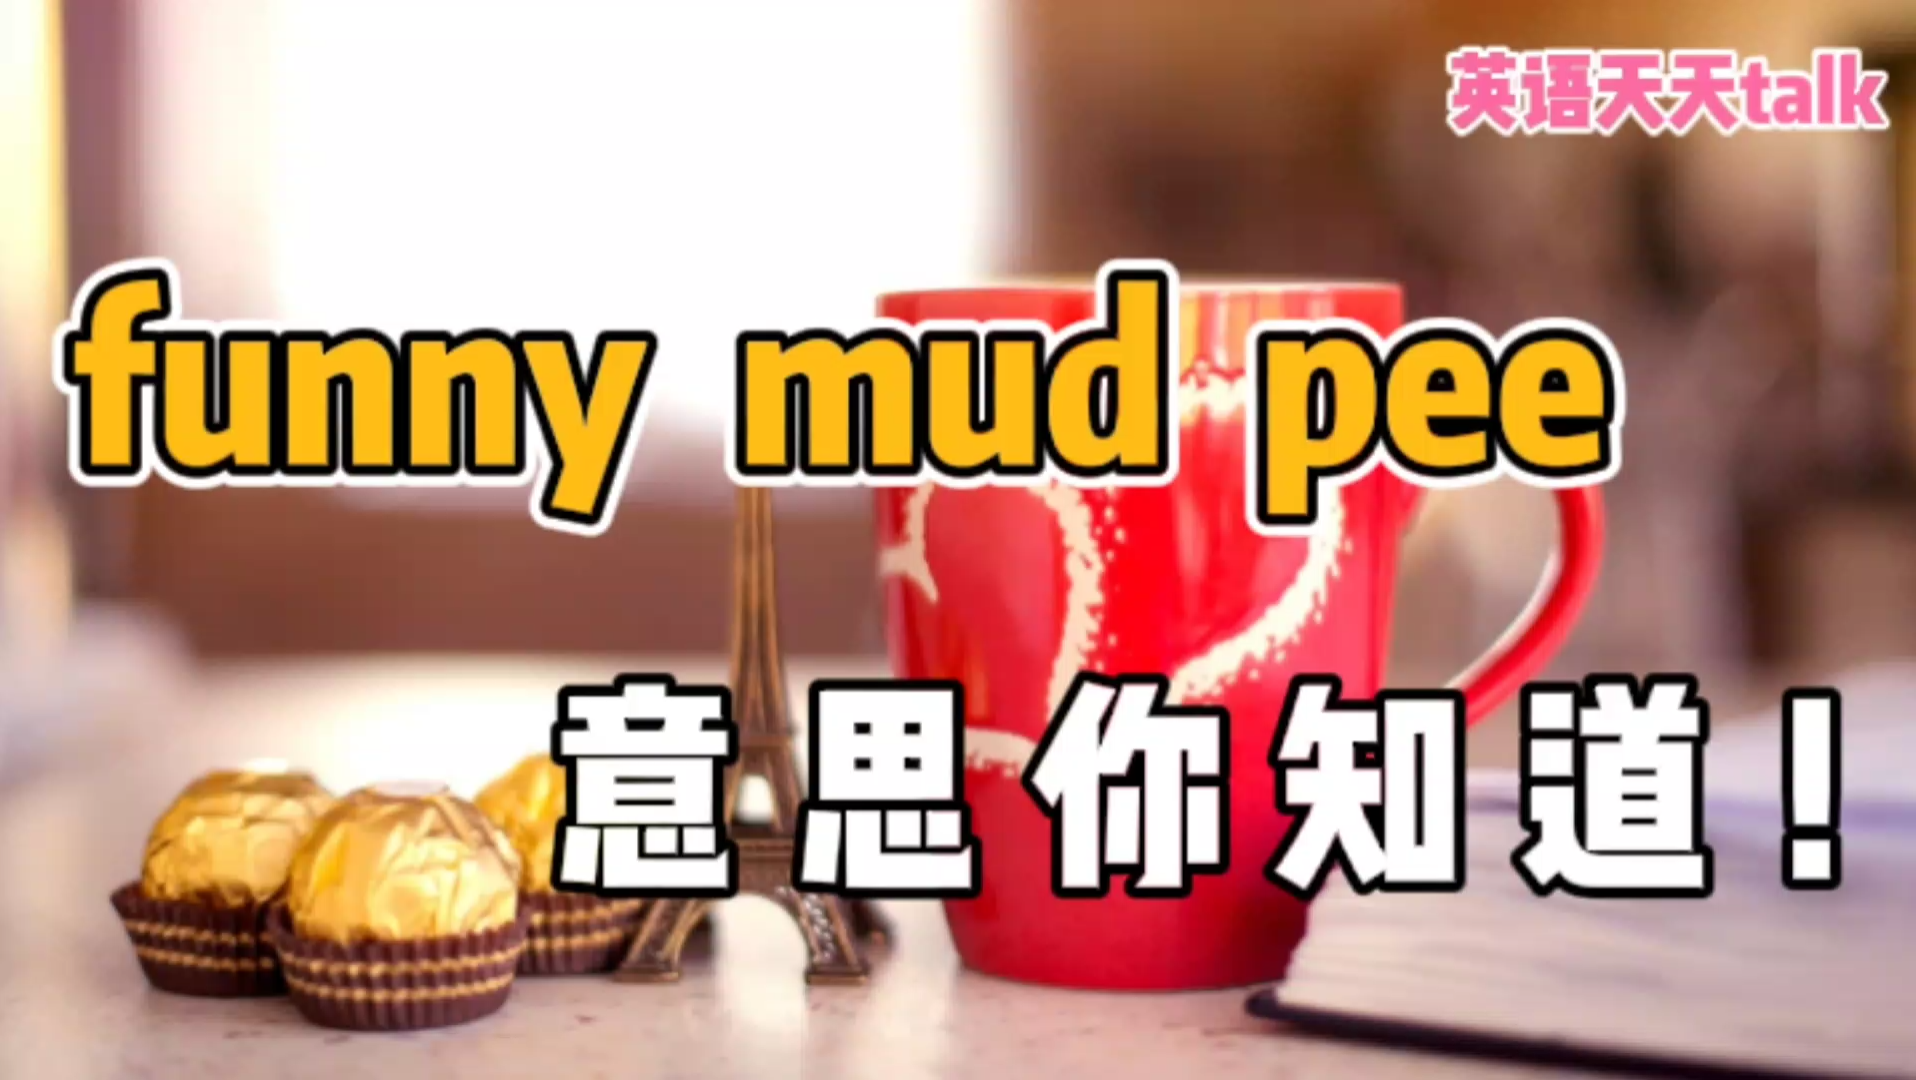 英语“funny mud pee”，翻译过来有点蒙，其实意思你知道！